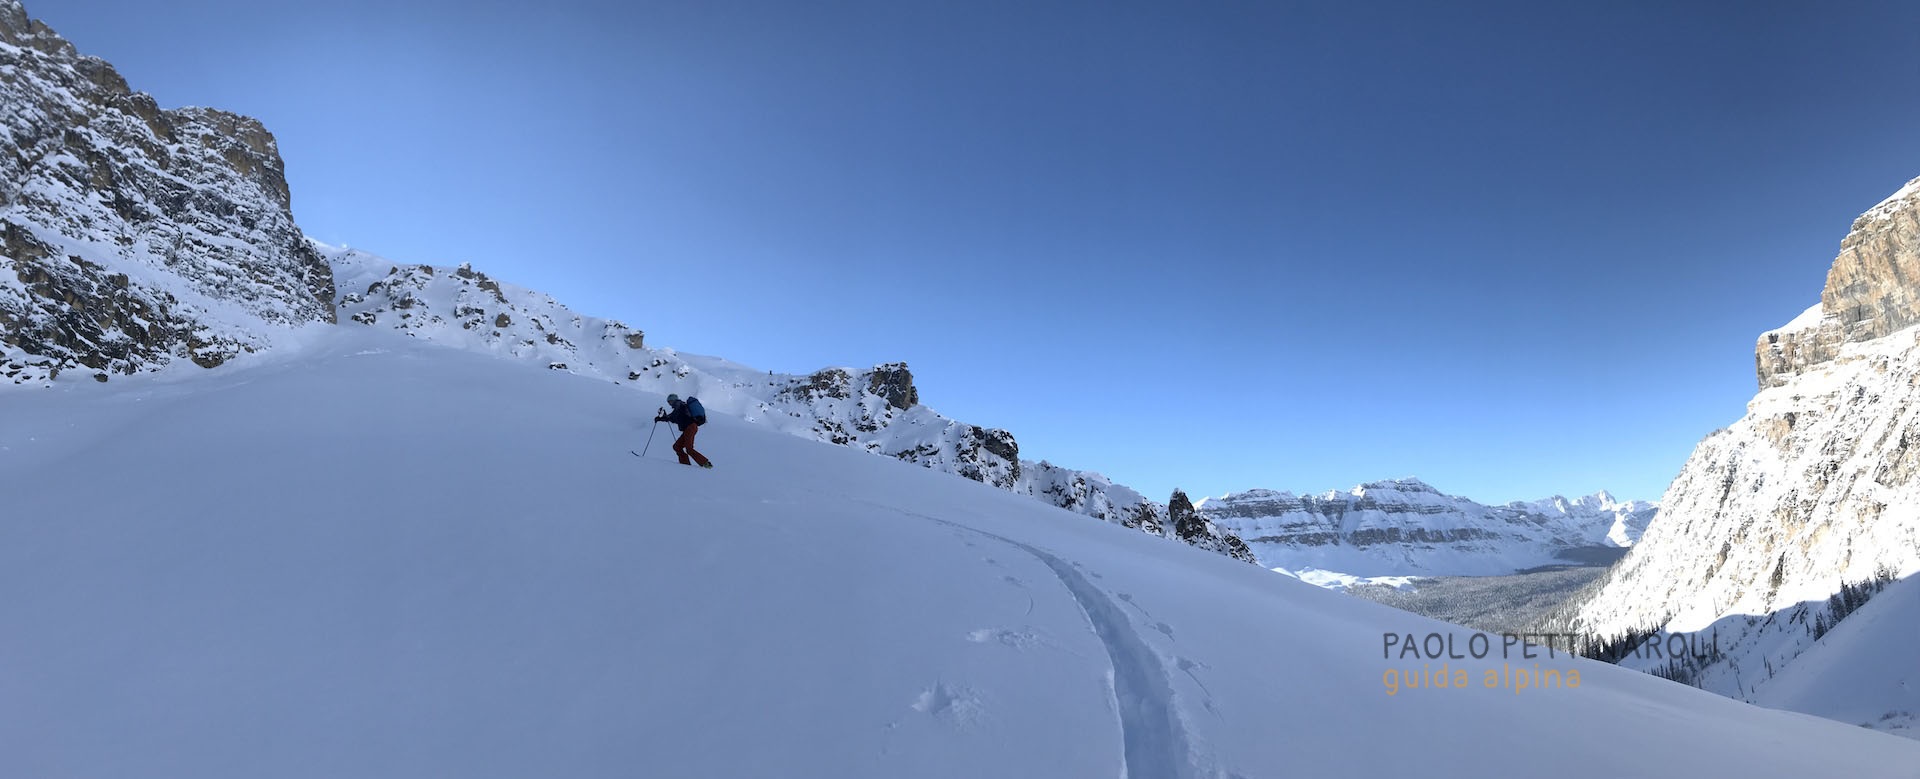 Foto - 2 di 9-scialpinismo_paolo pettinaroli guida alpina